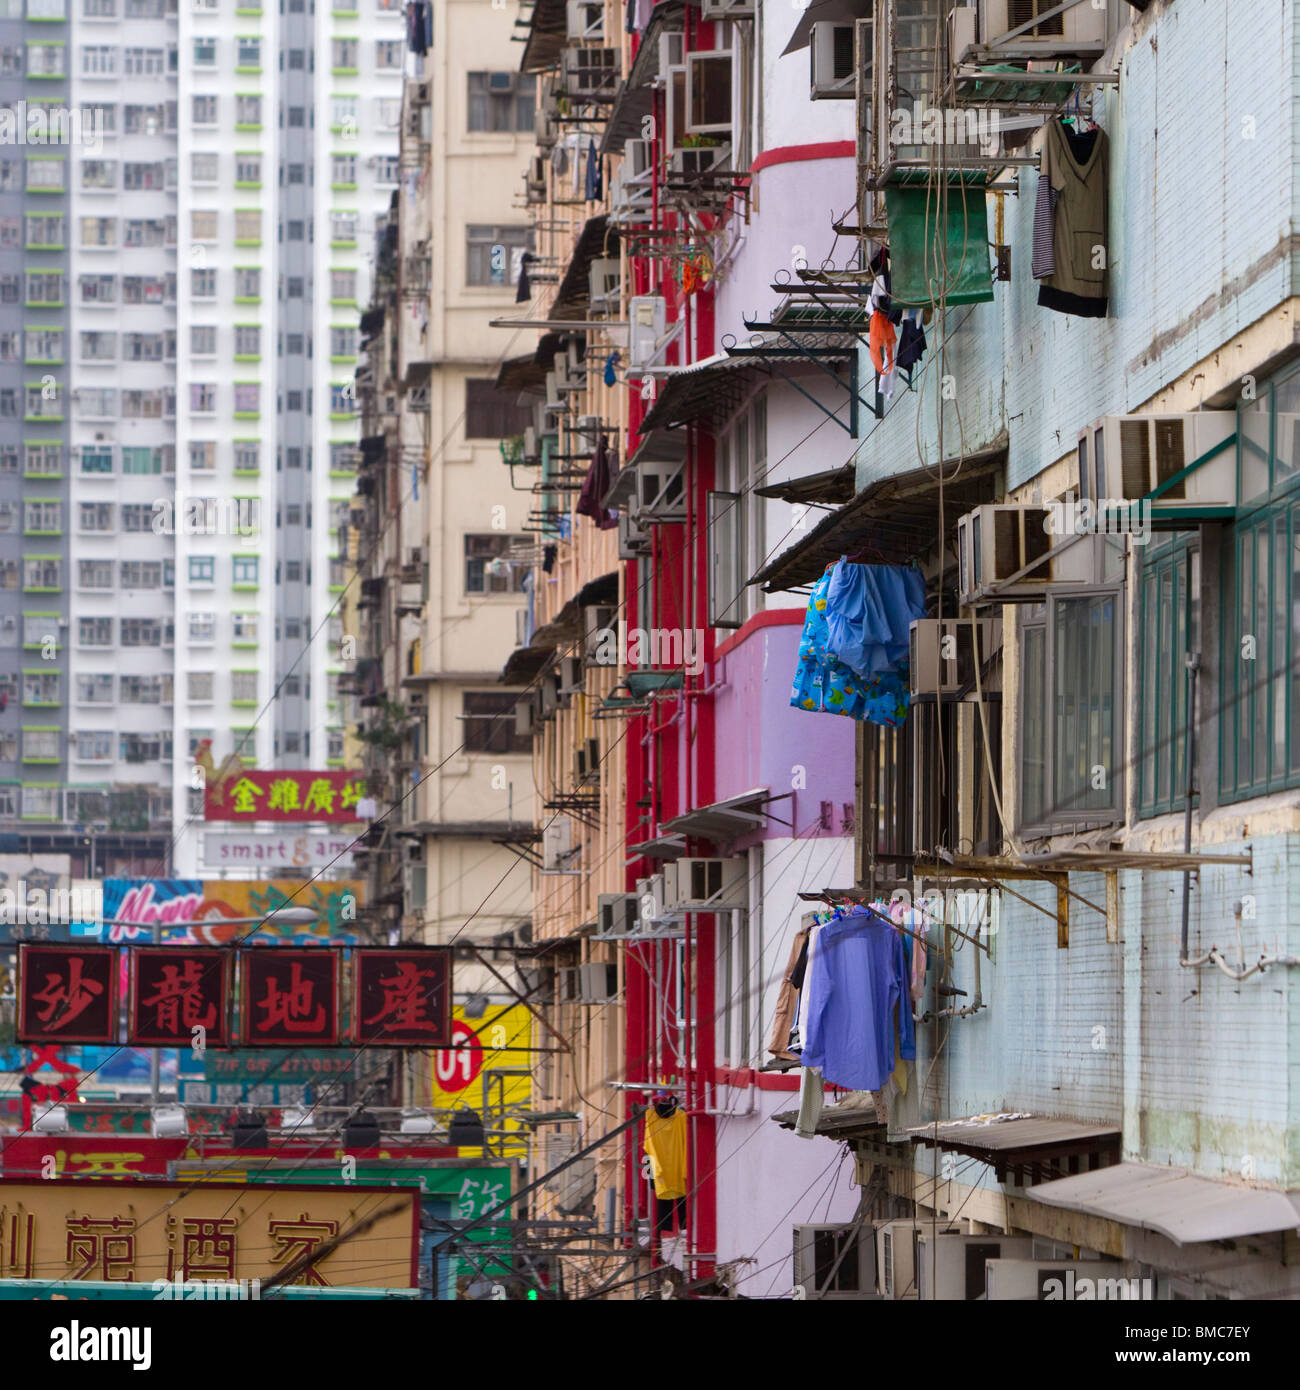 Mong Kok, Hong Kong, SAR of China Stock Photo